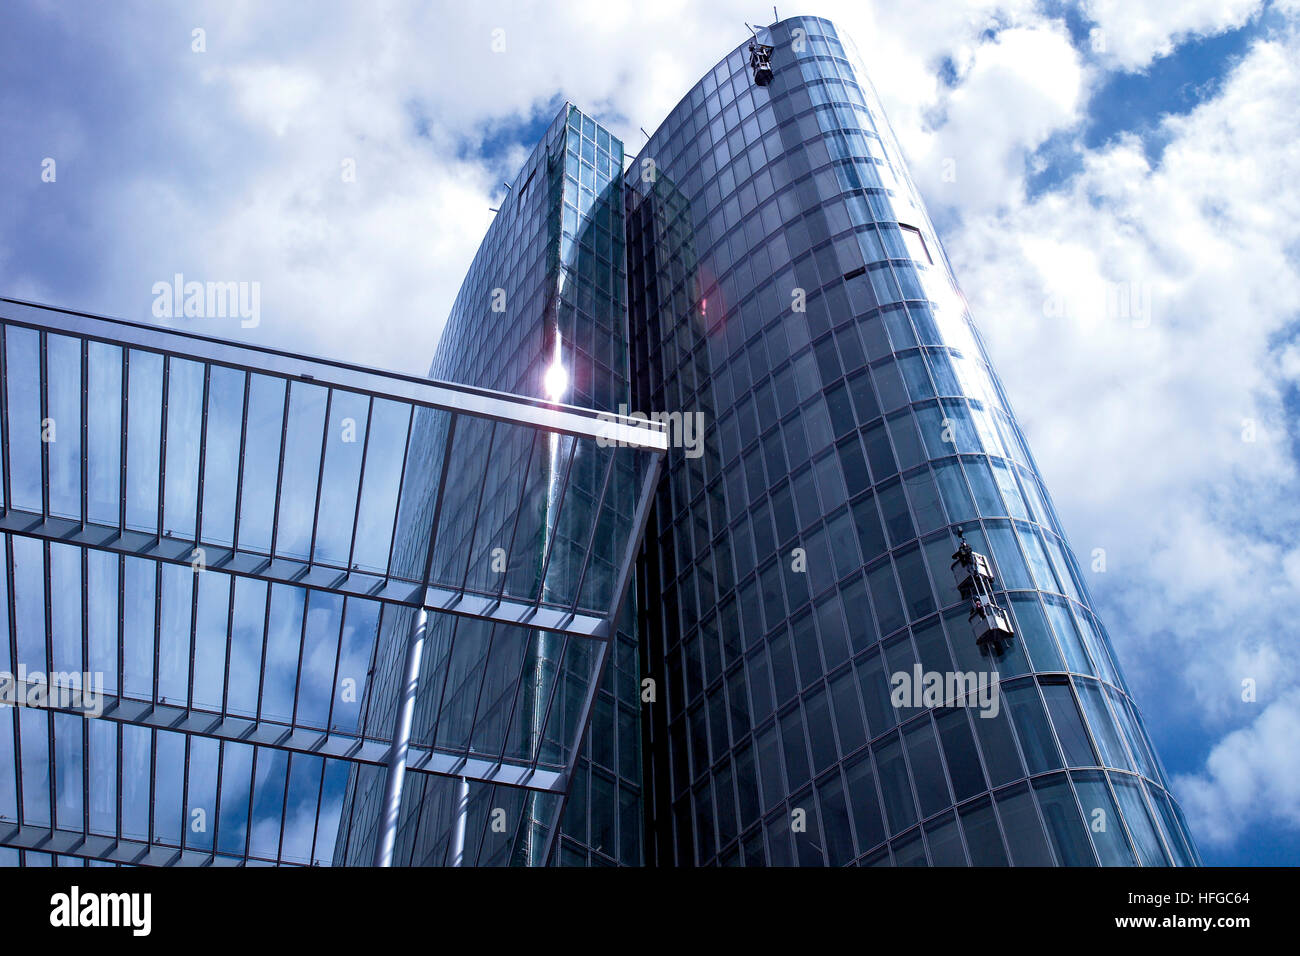 High-rise building, glass facade Stock Photo